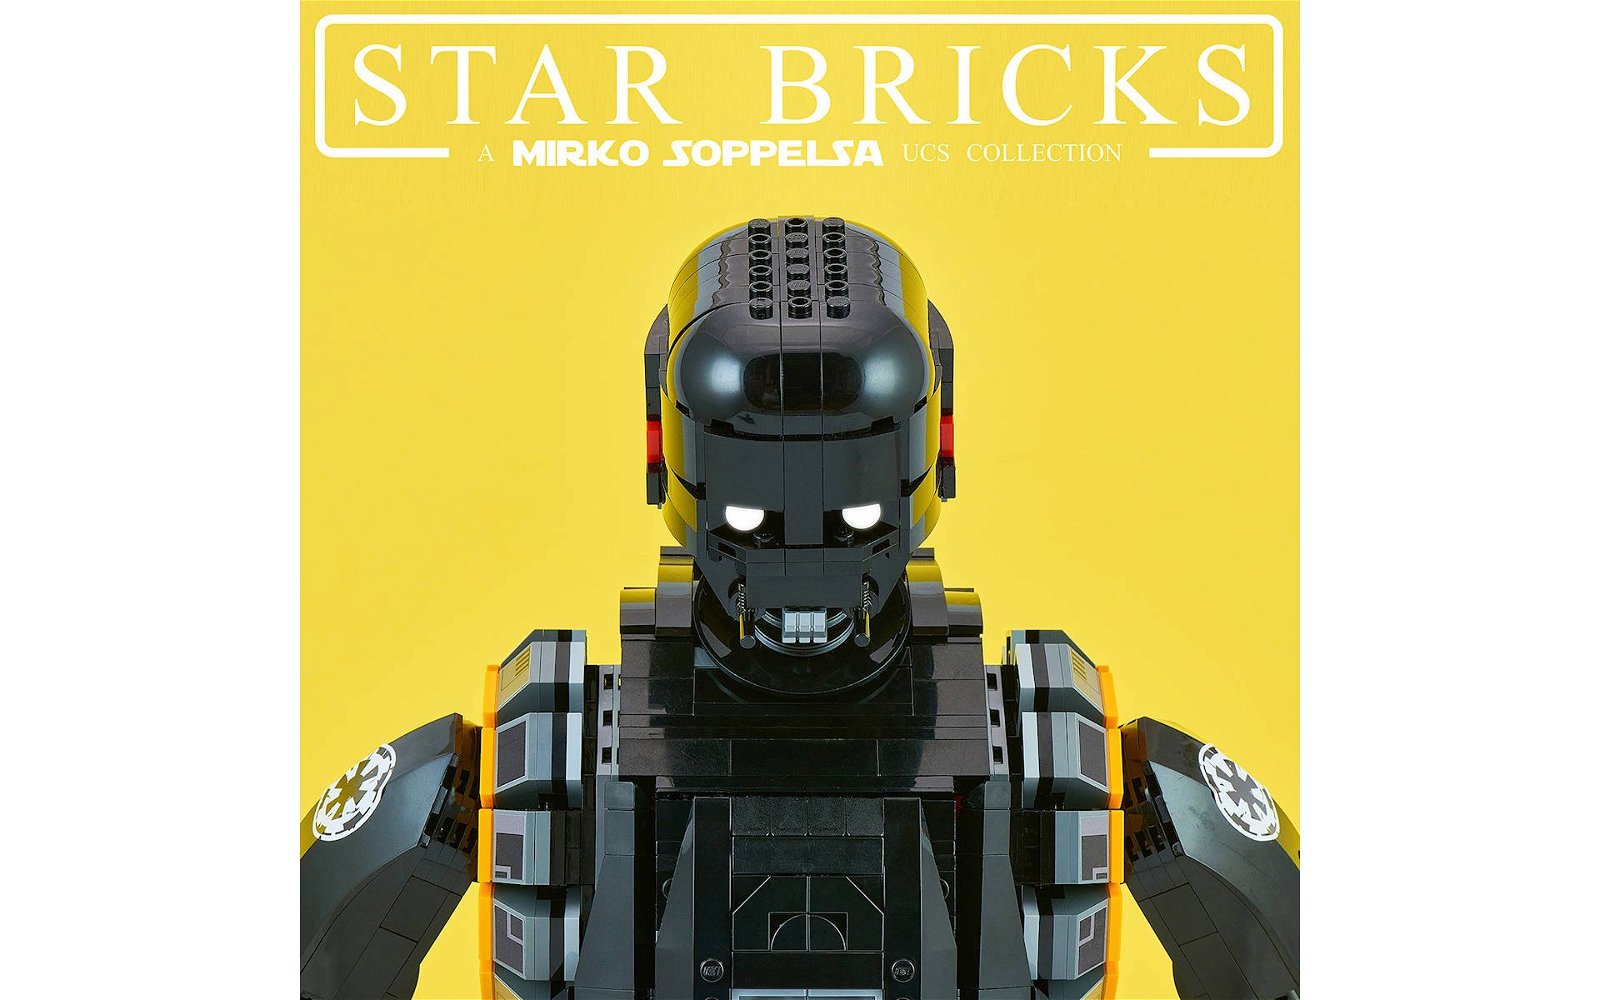 Immagine di LEGO: droide K-2S0, il nuovo progetto di Mirko Soppelsa